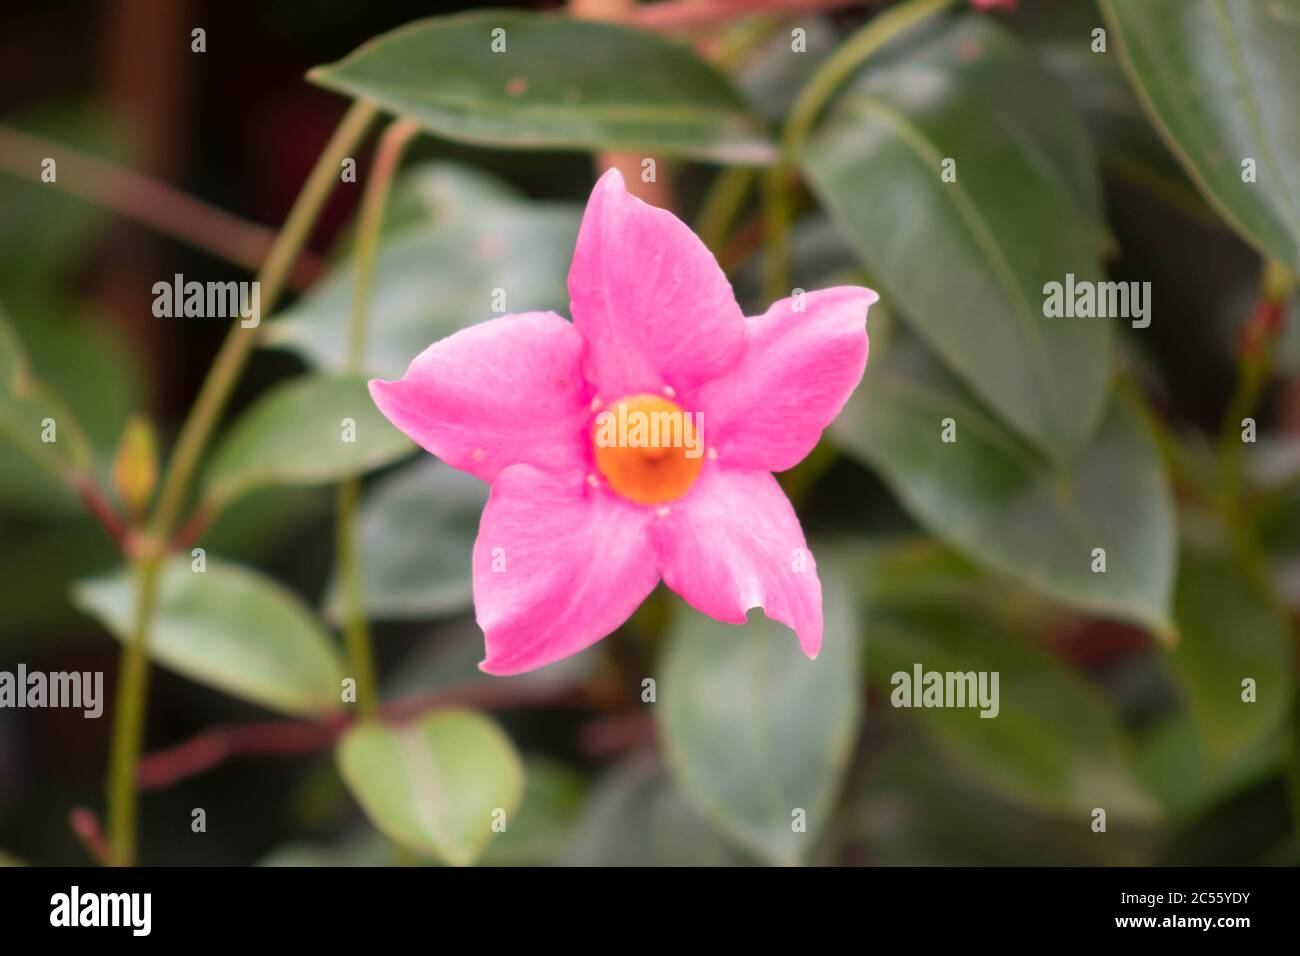 Closeup shot of a pink rocktrumpet flower in a garden Stock Photo